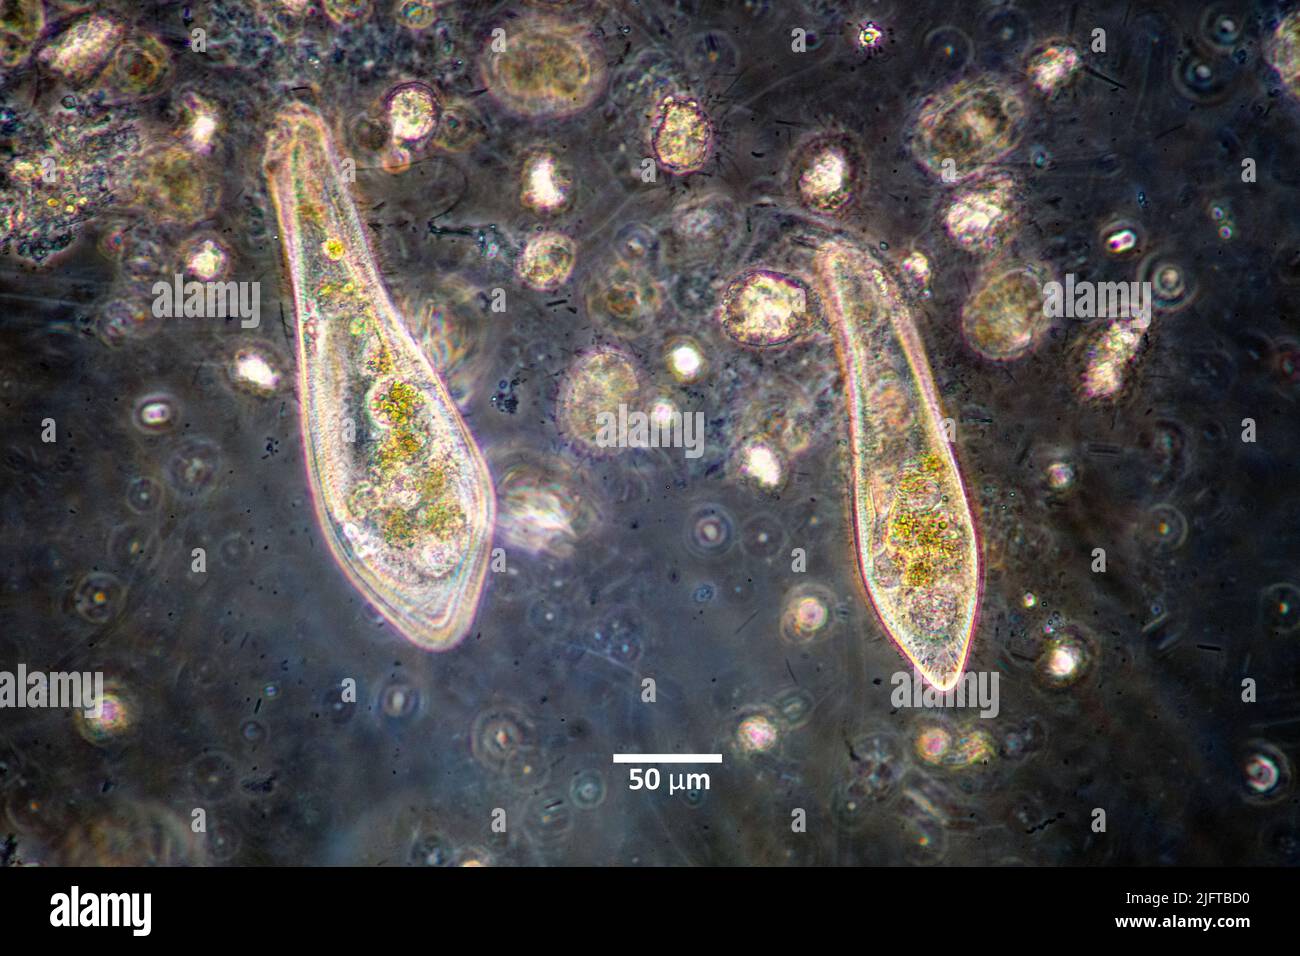 Ciliados del género Paramecium alimentándose de bacterias en un cultivo de agua dulce. Foto de stock